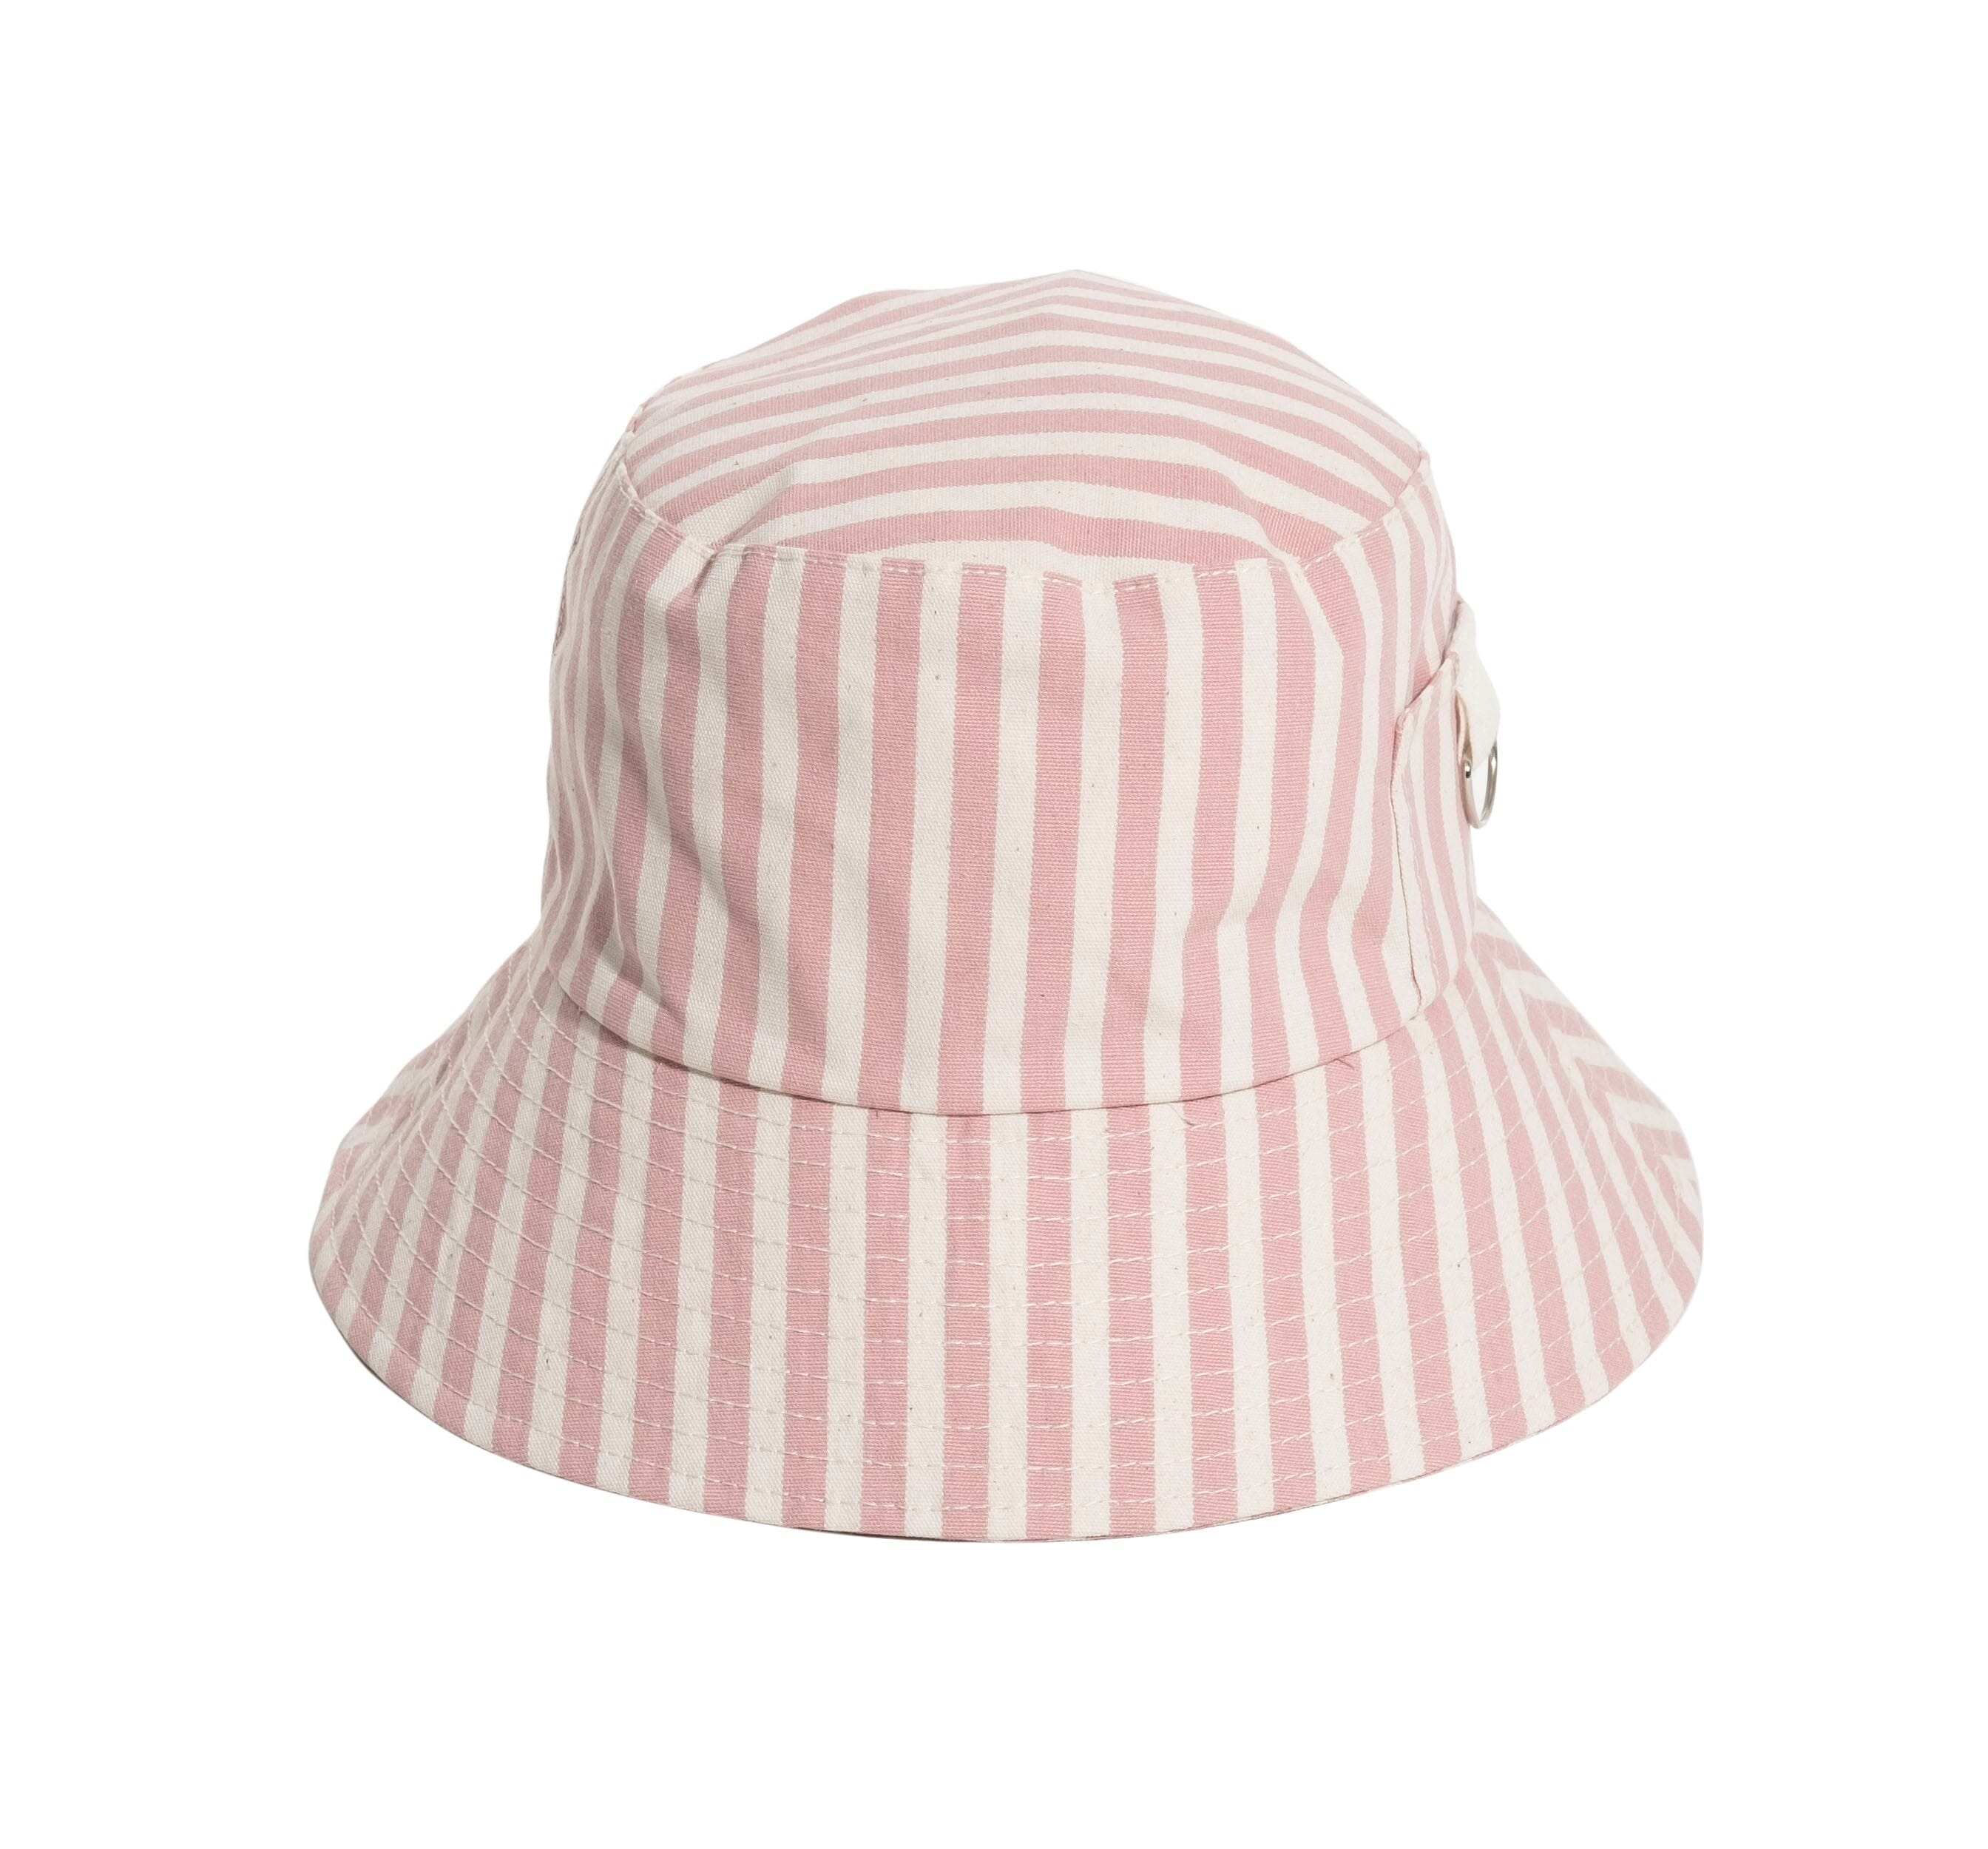 The Bucket Hat - Lauren's Pink Stripe Bucket Hat Business & Pleasure Co 